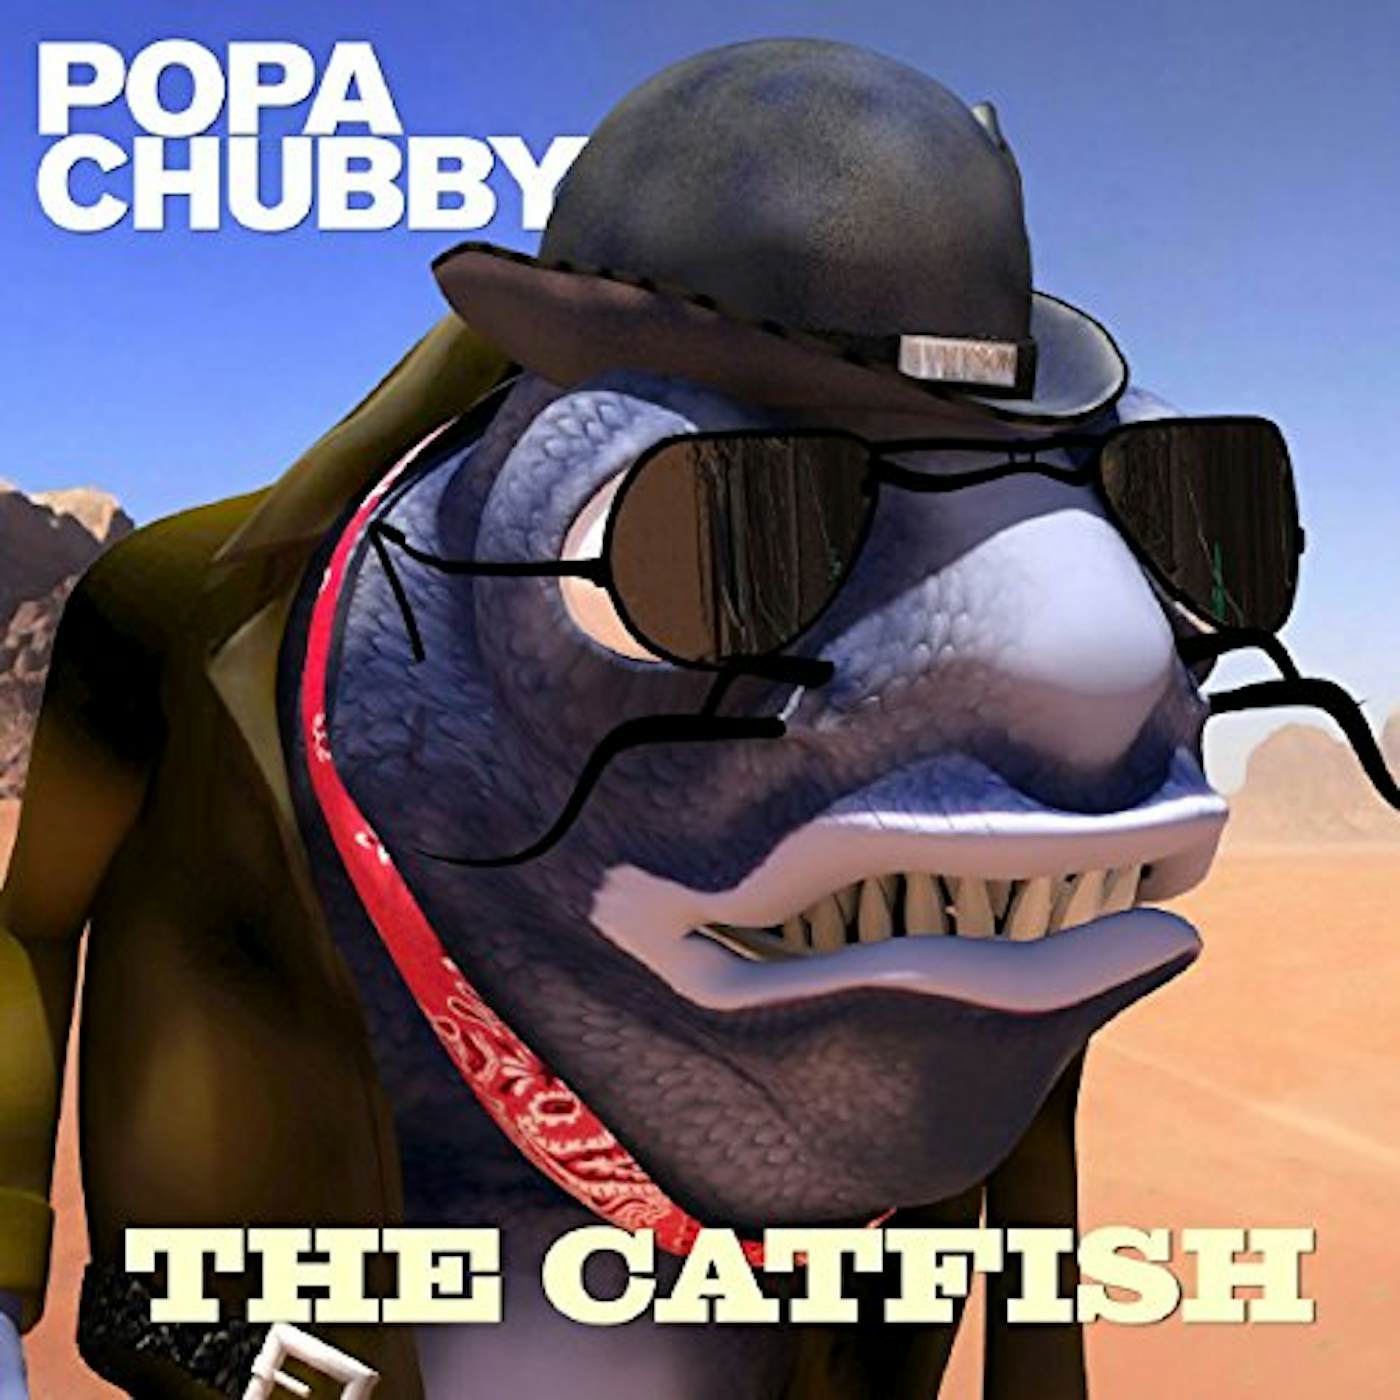 Popa Chubby CATFISH CD